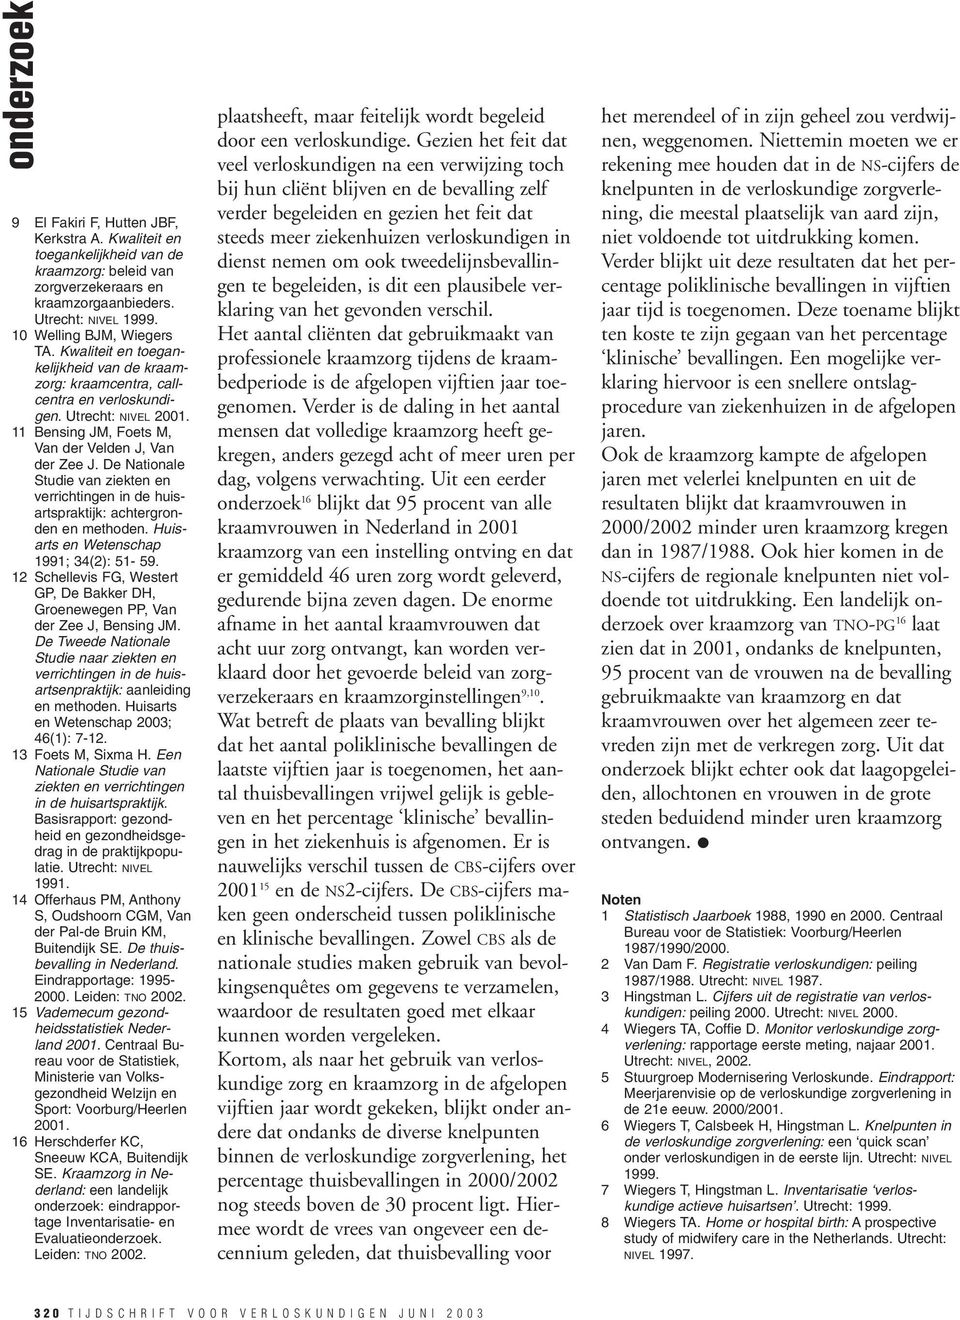 De Nationale Studie van ziekten en verrichtingen in de huisartspraktijk: achtergronden en methoden. Huisarts en Wetenschap 1991; 34(2): 51-59.